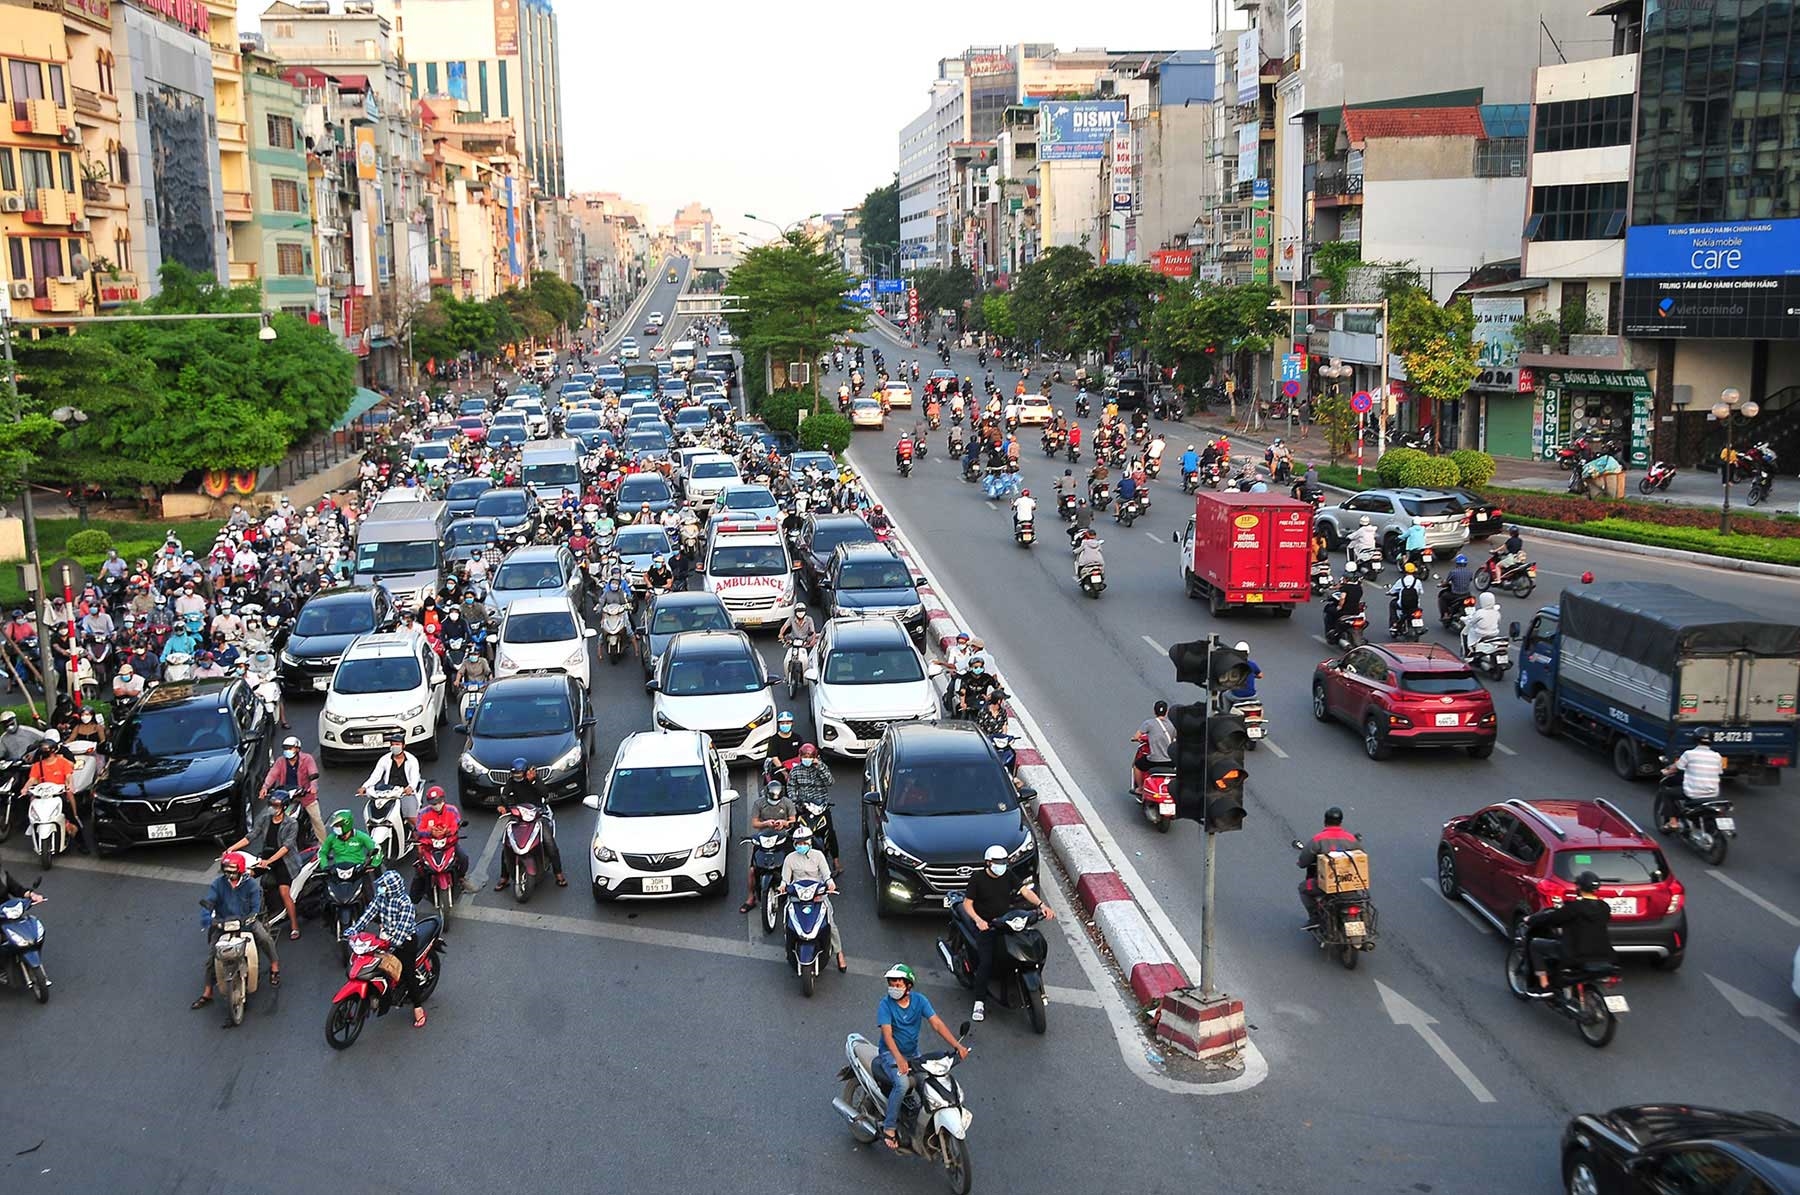 Cùng khám phá hệ thống thu phí giao thông hiện đại và thông minh nhất tại Việt Nam với những hình ảnh đẹp mắt.